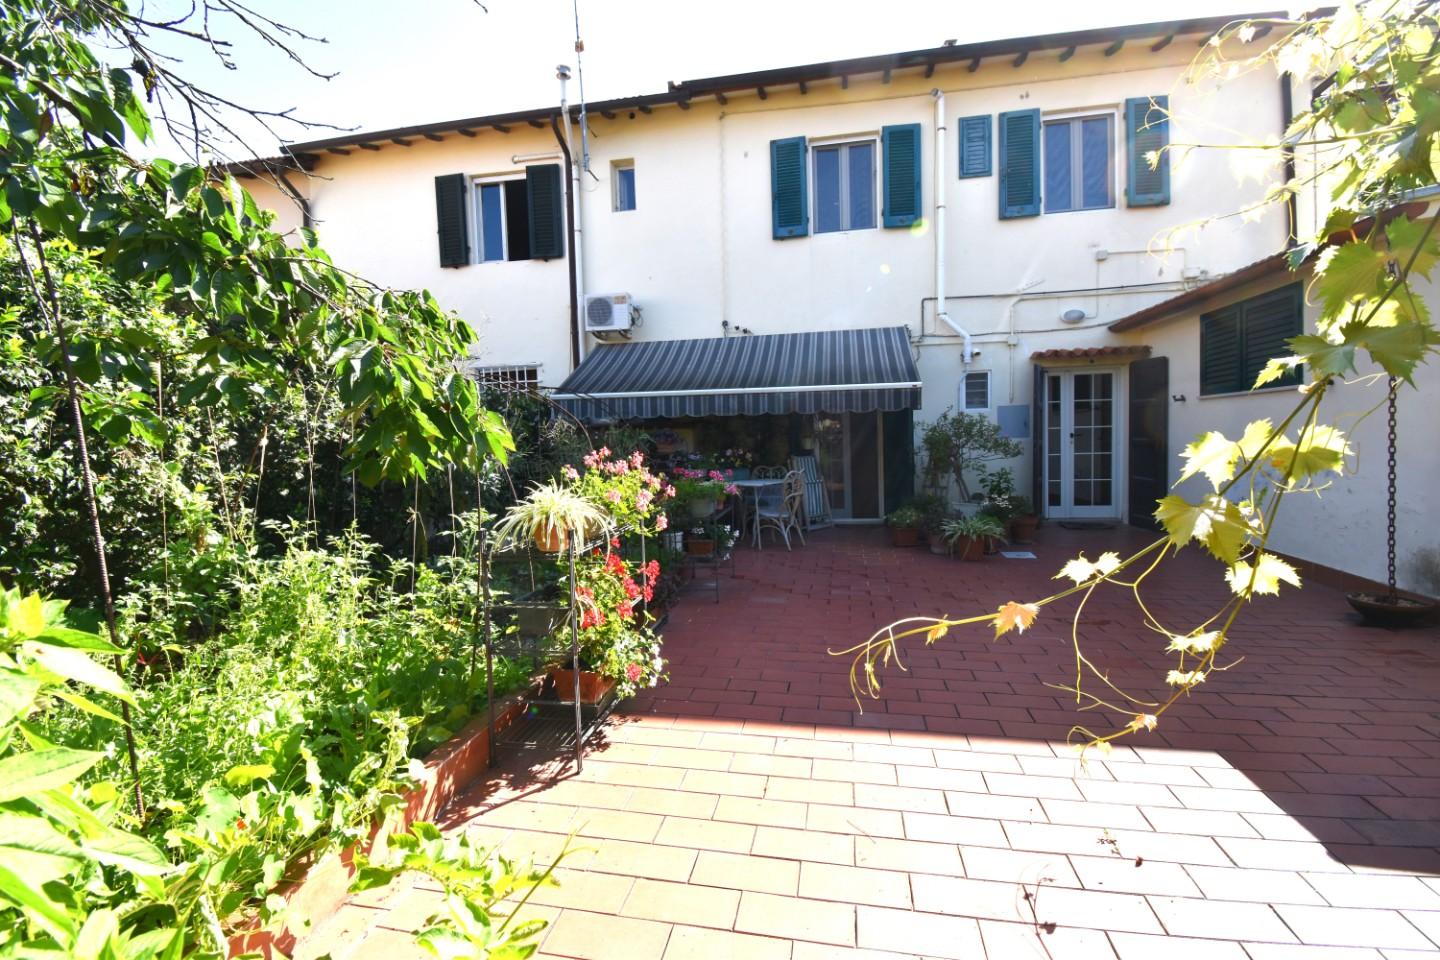 Casa indipendente con giardino, Pisa porta fiorentina